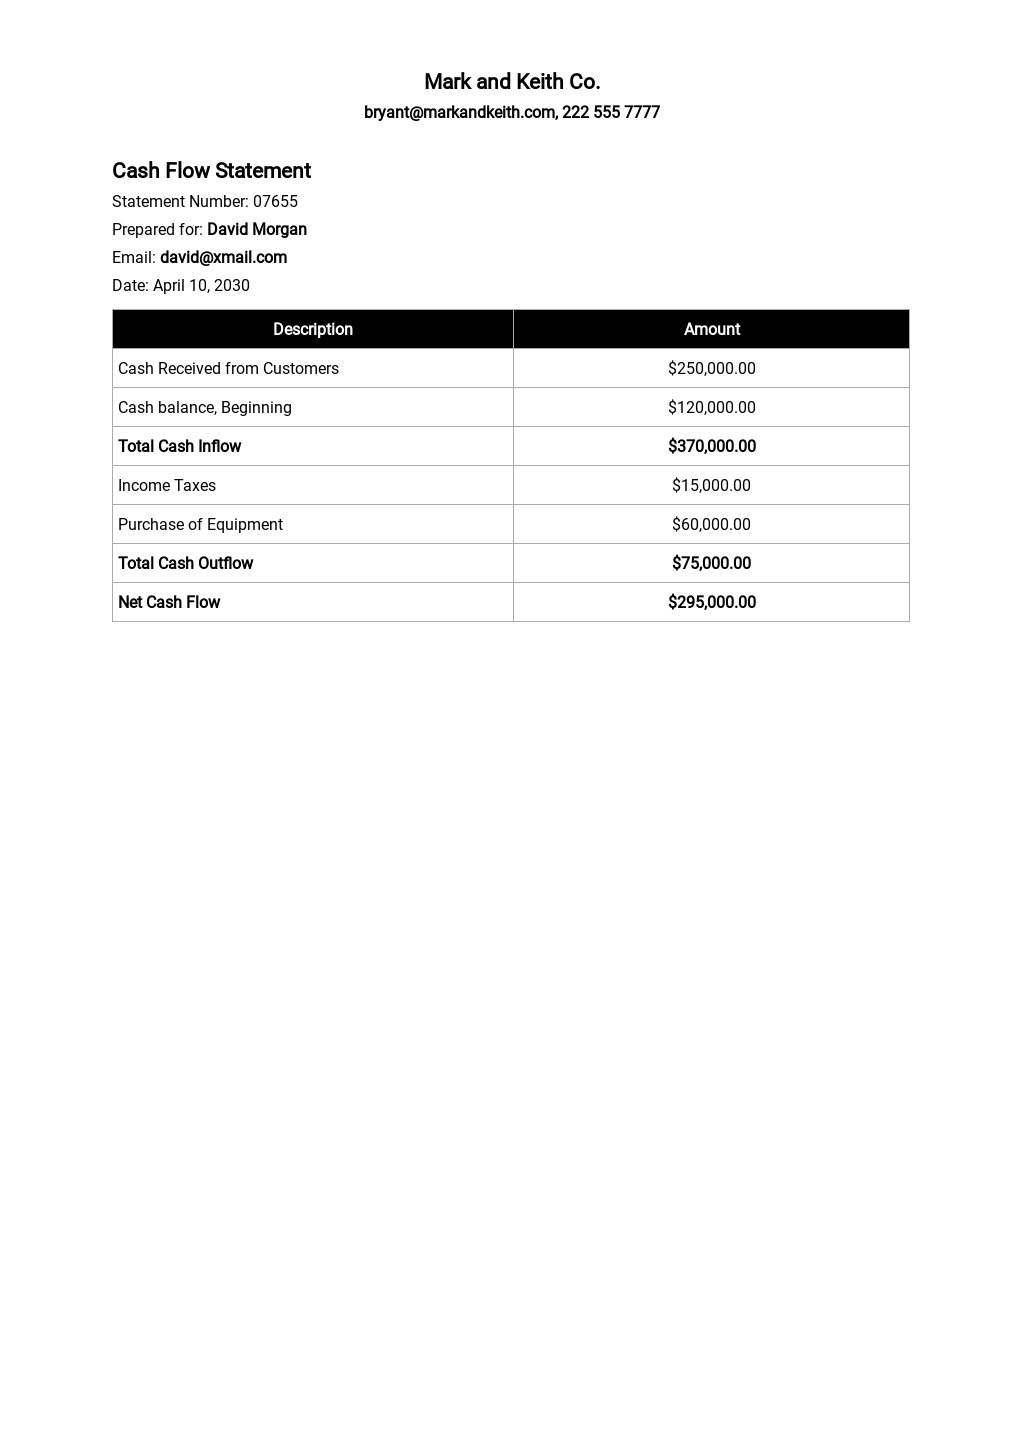 cash flow statement format pdf